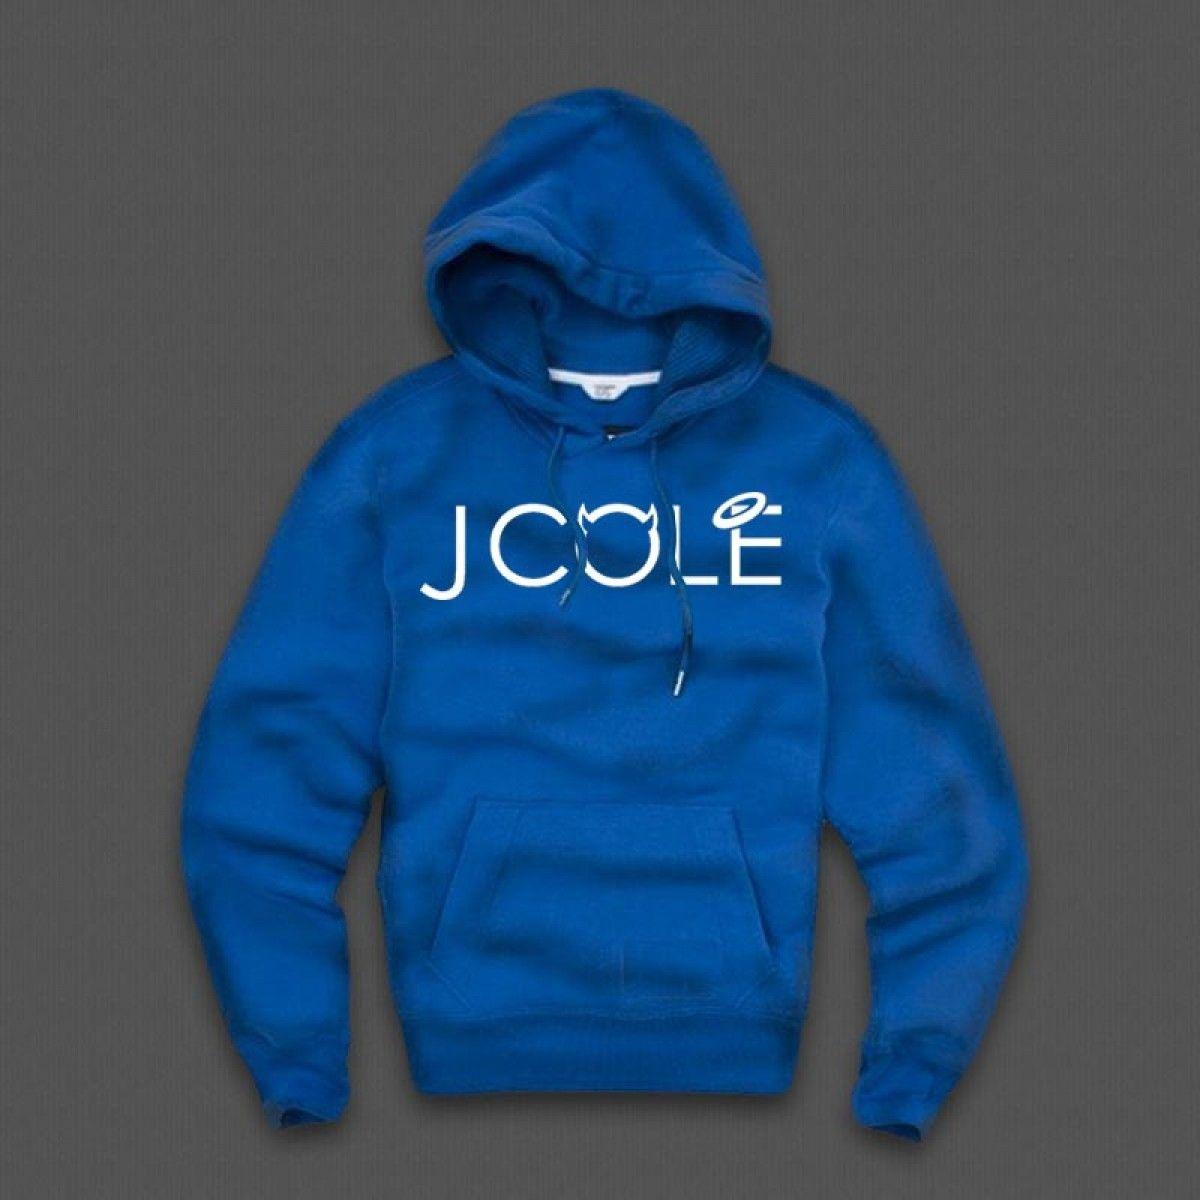 J Cole Logo - J Cole Logo Hoodie - WEHUSTLE | MENSWEAR, WOMENSWEAR, HATS, MIXTAPES ...